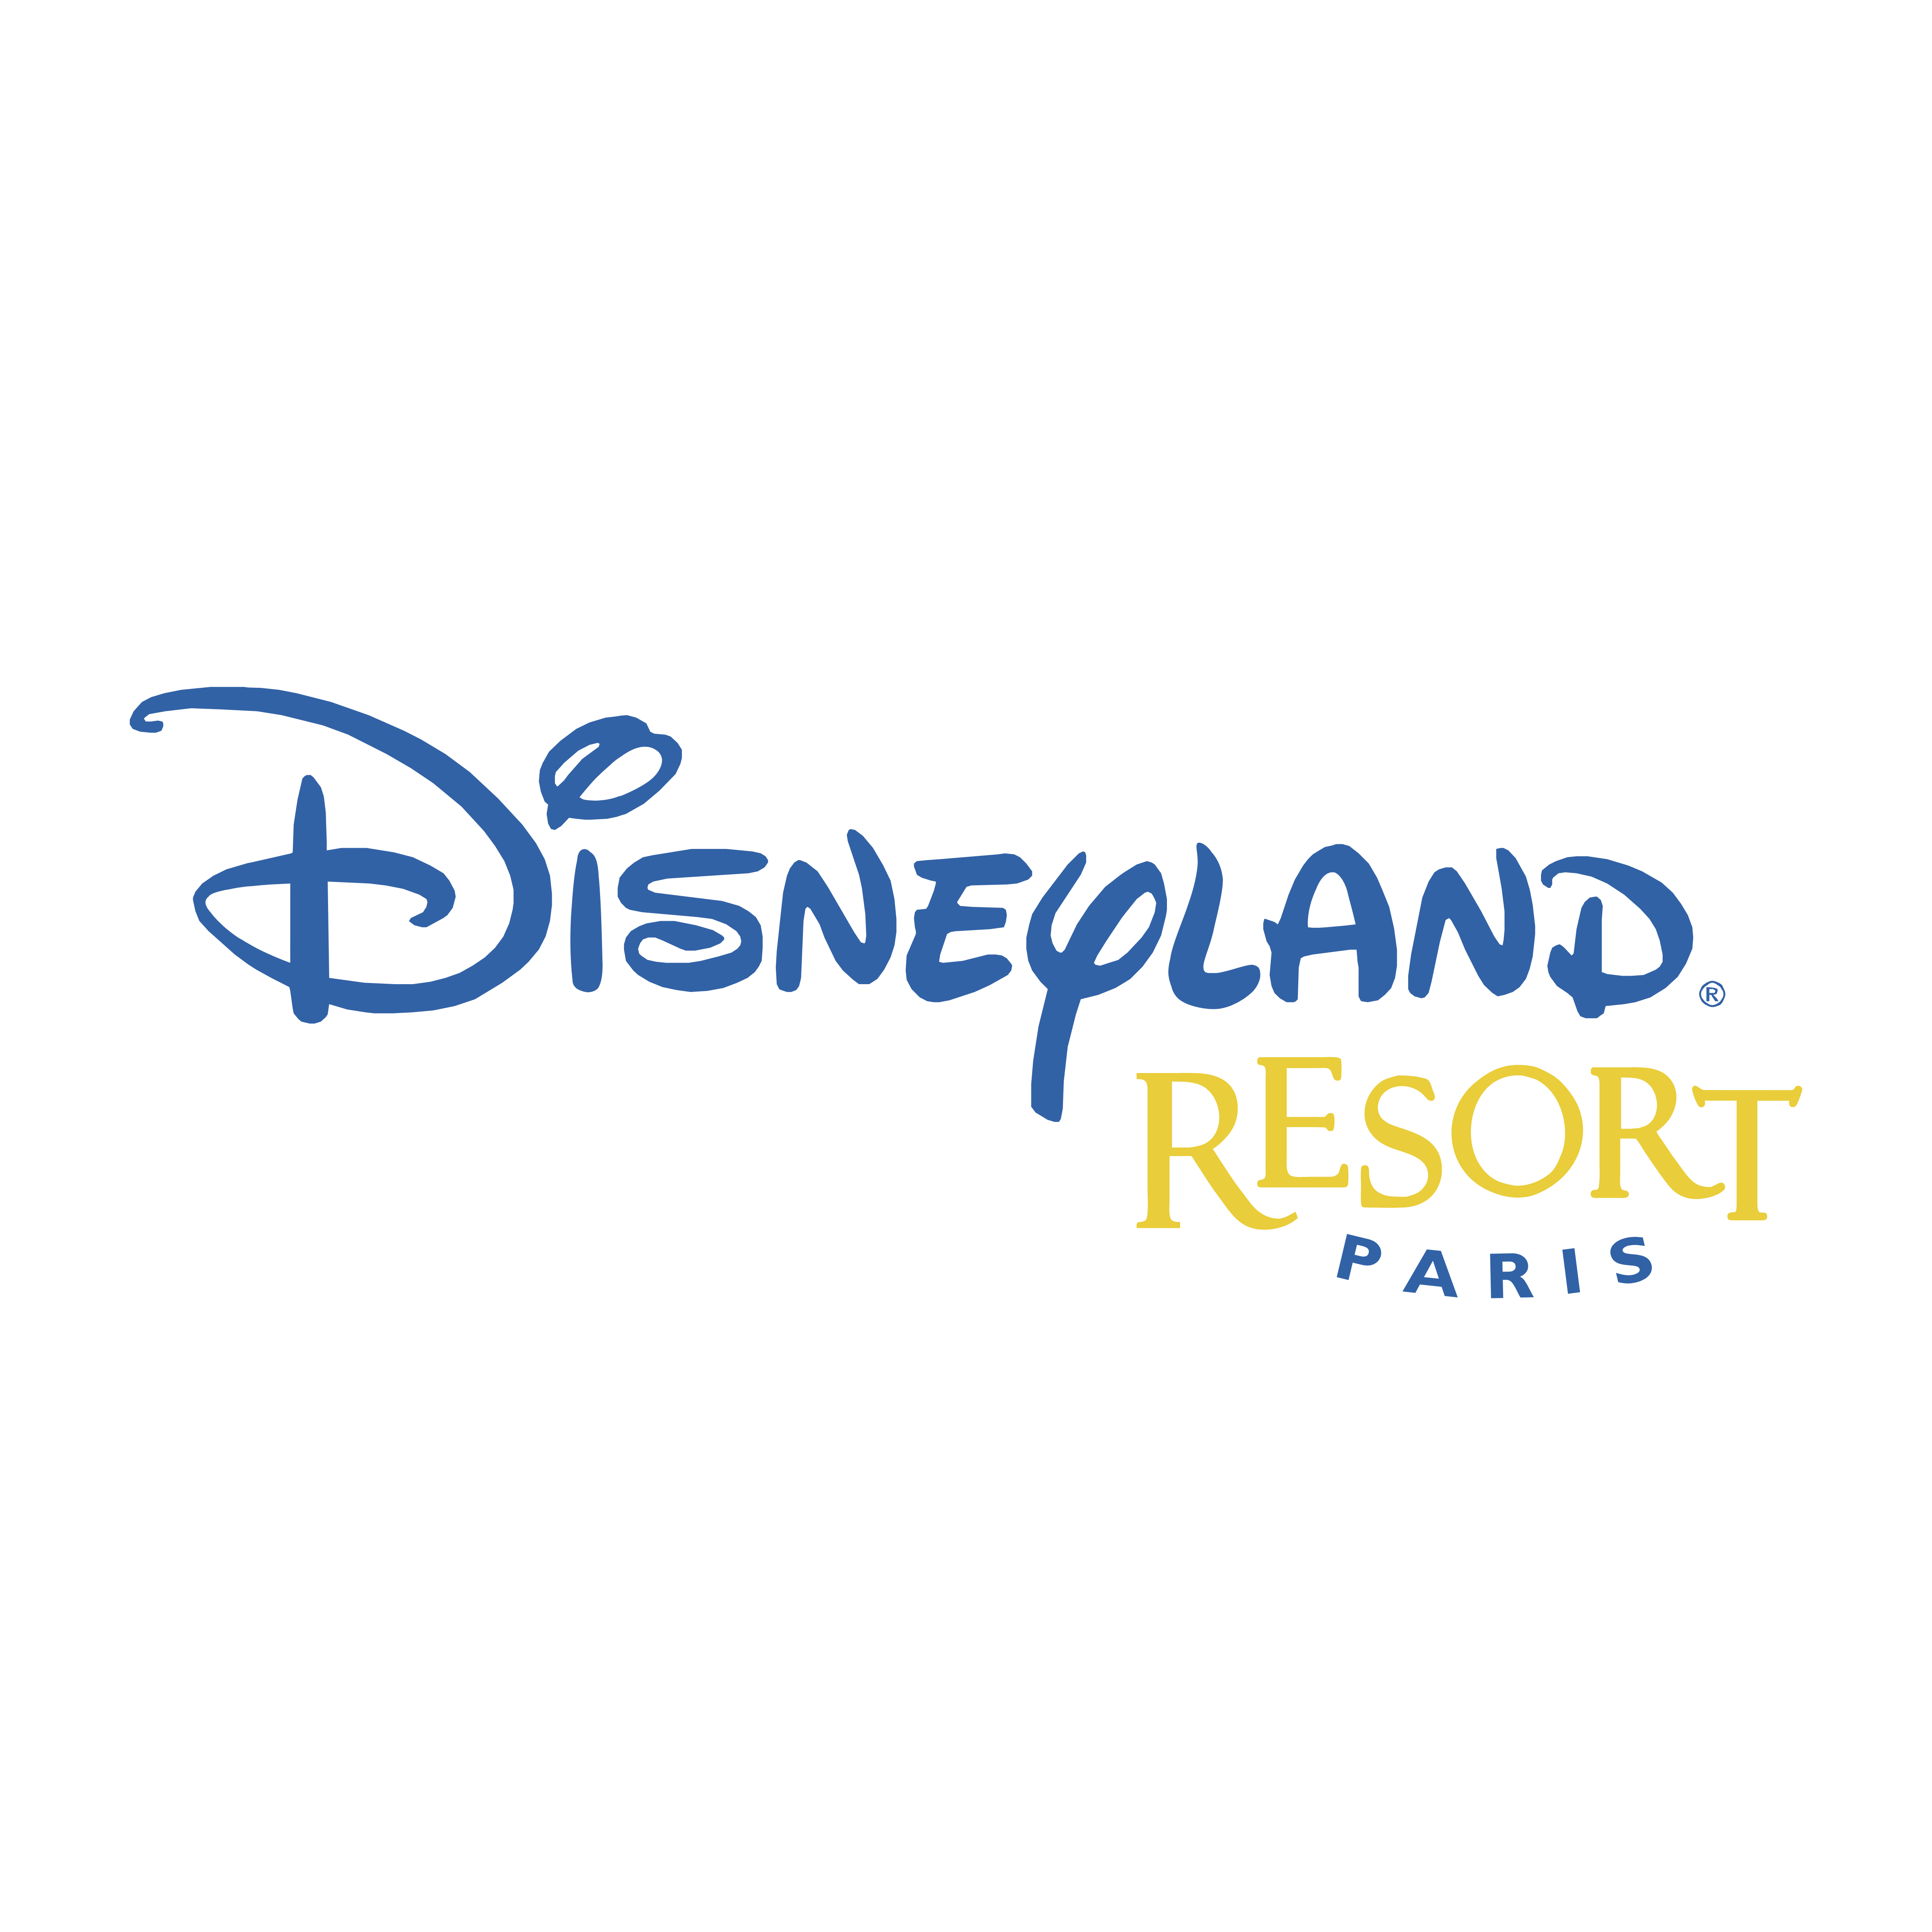 Disneyland Resort Logo - Disneyland Resort – Logos Download